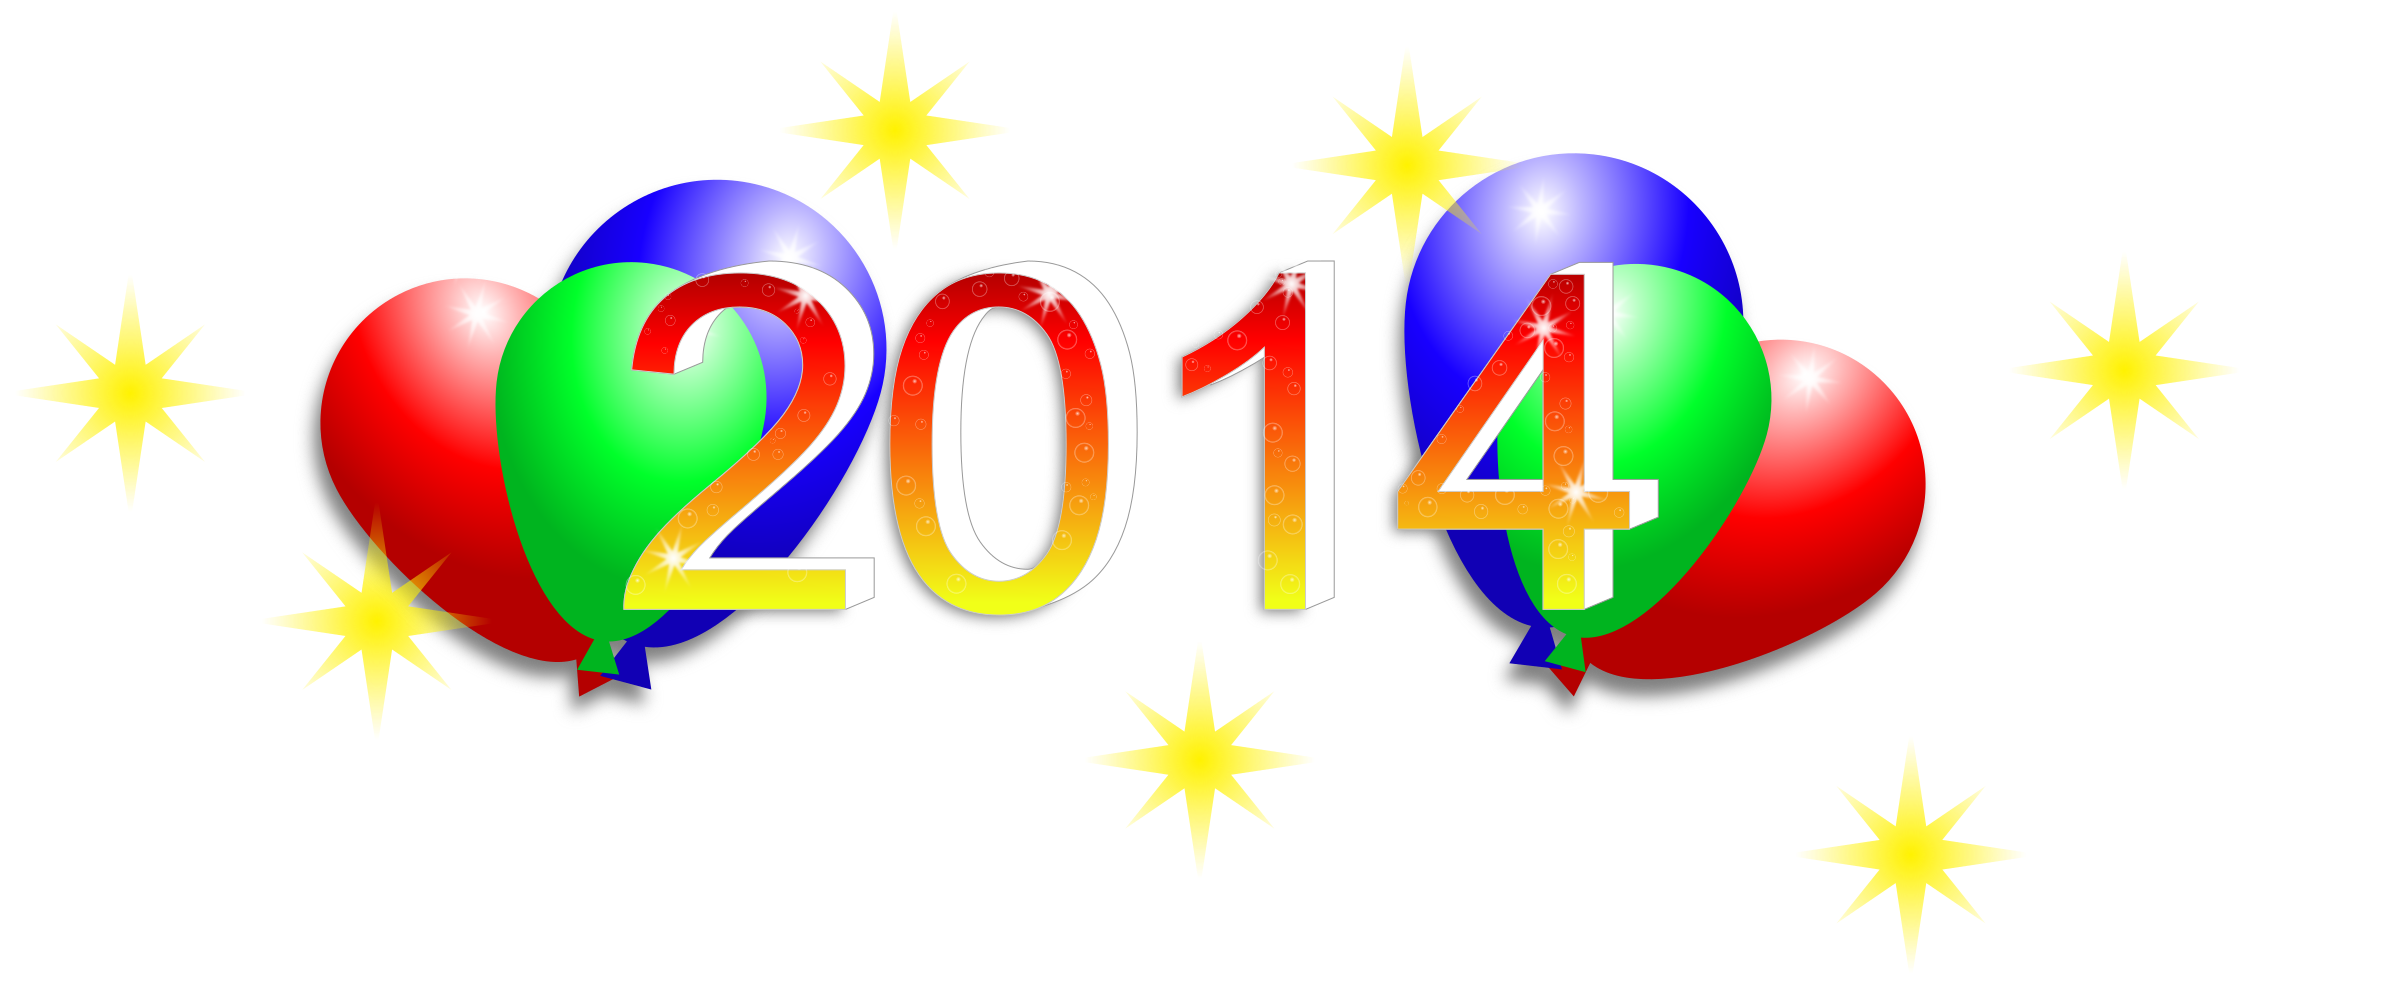 Happy New Years 2014 Clip Art Happy New Year 2014